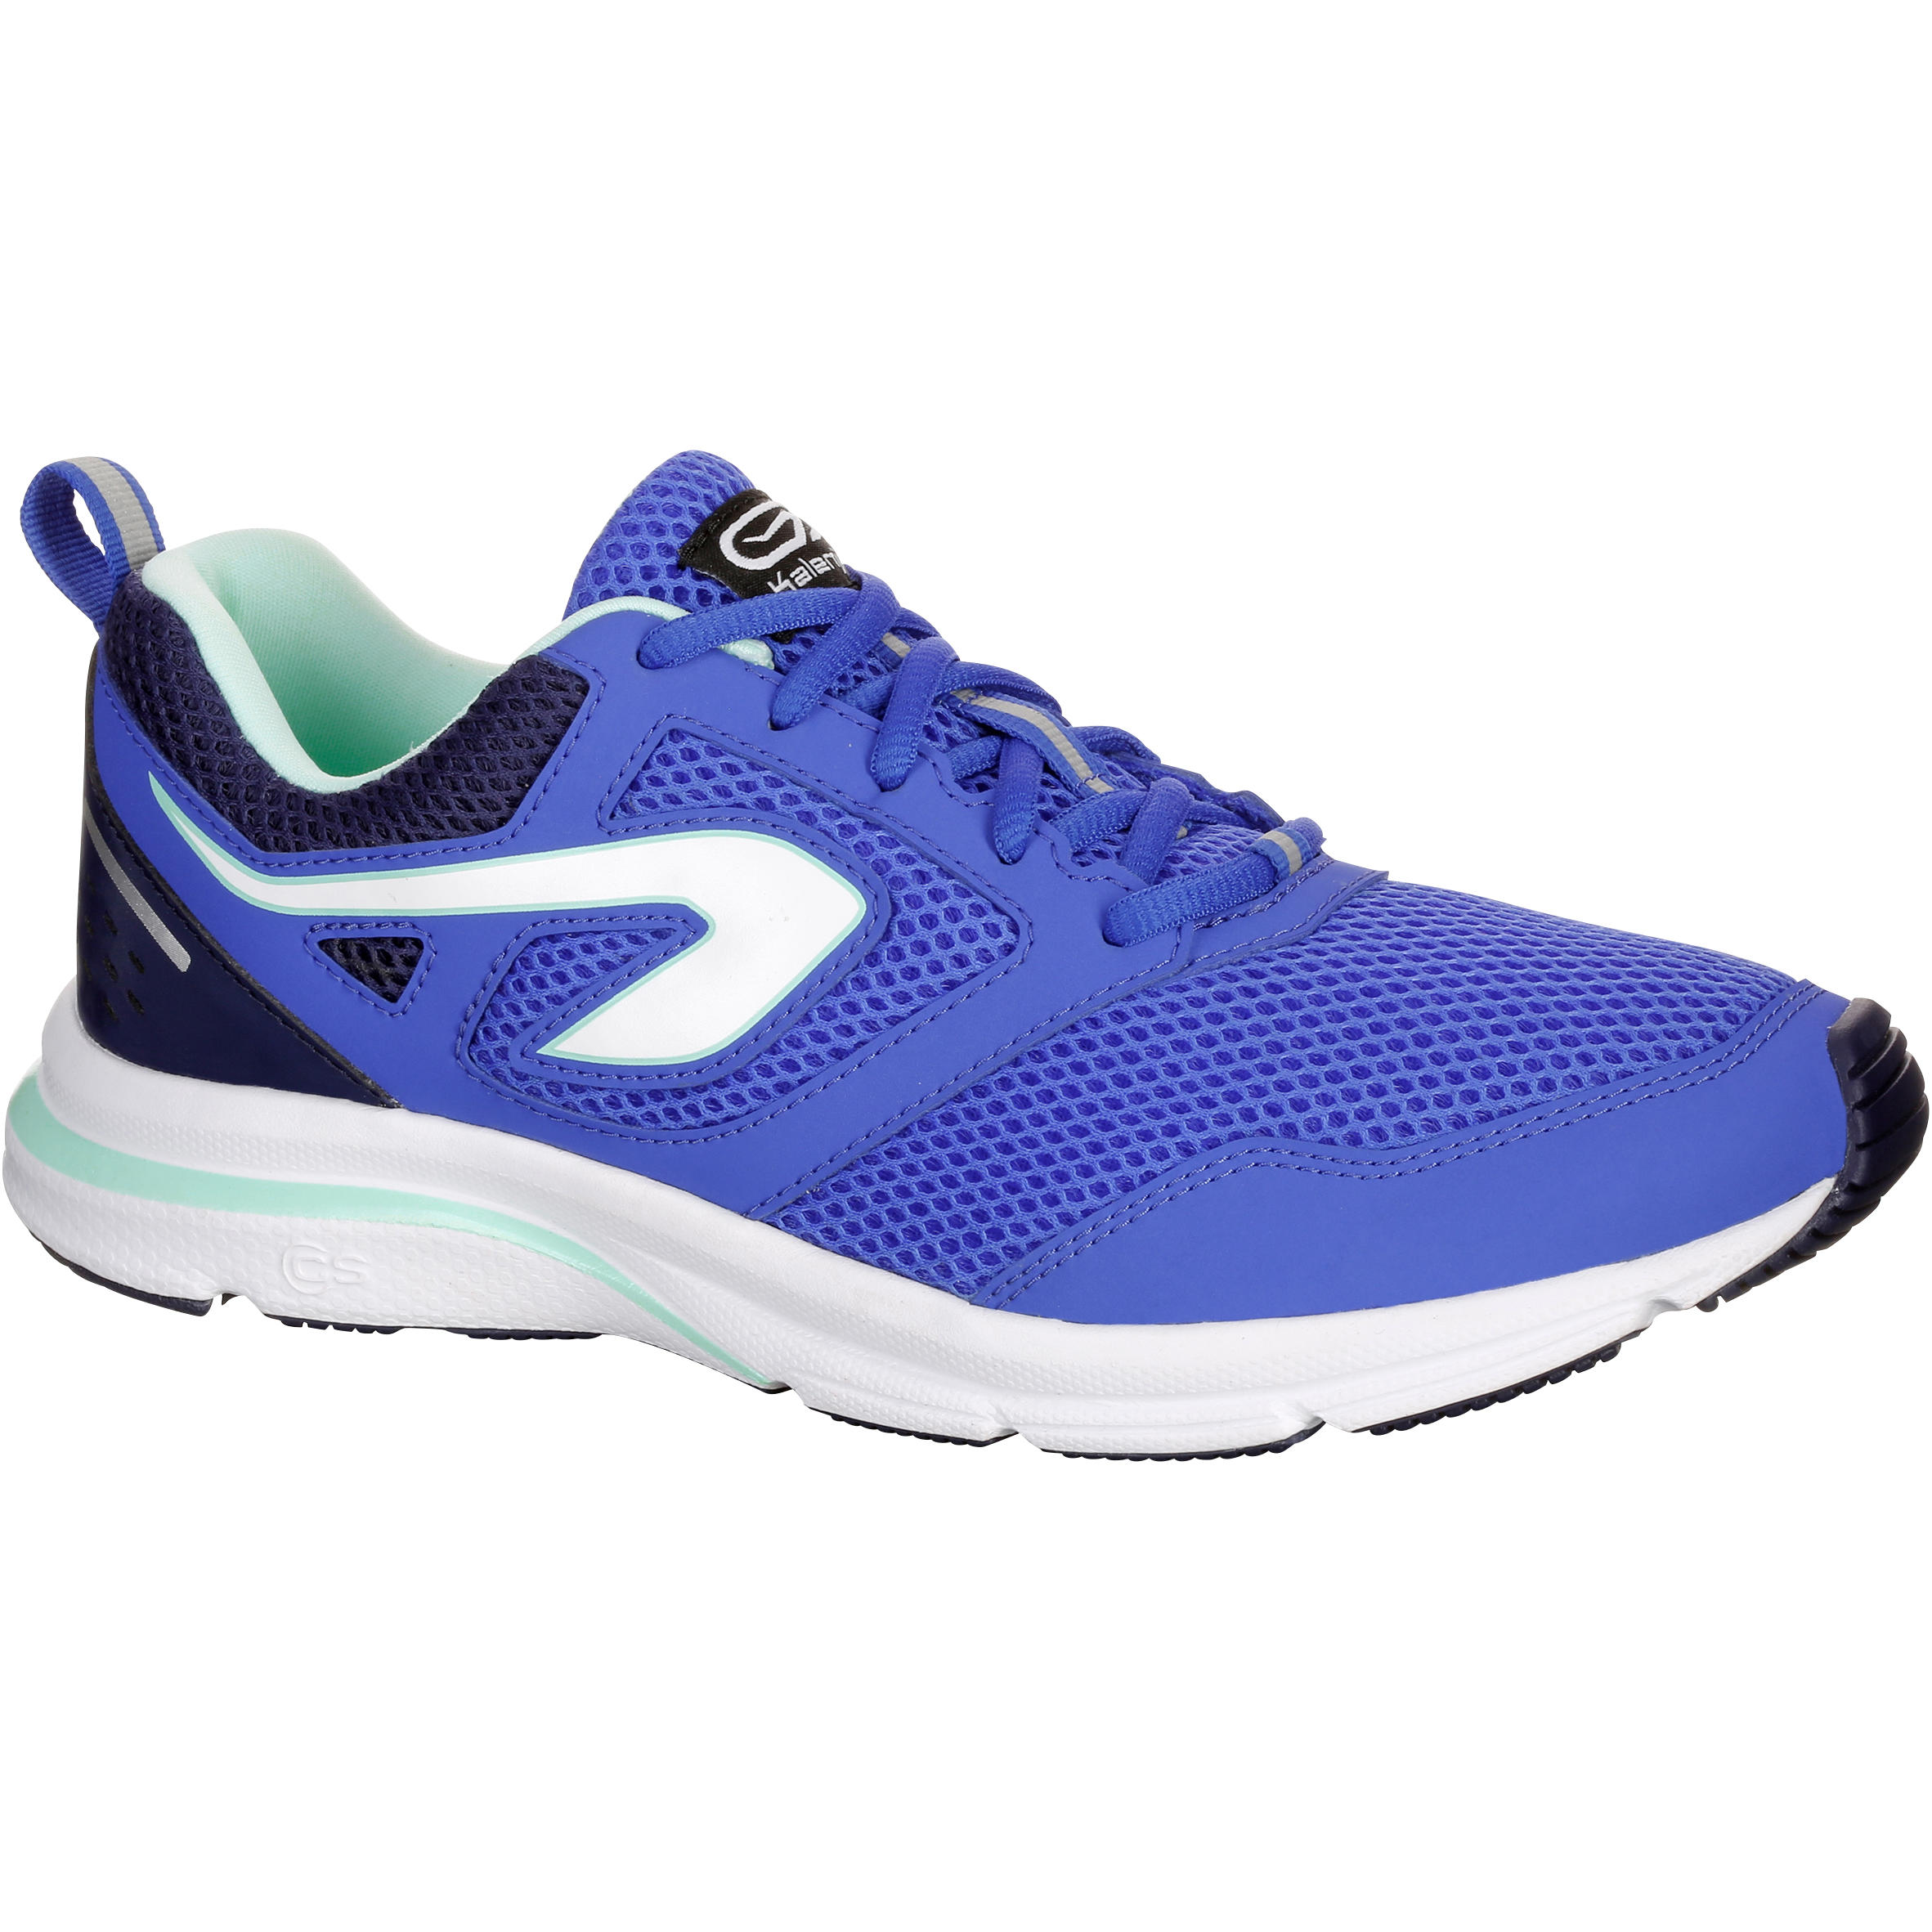 Run Active Women's Running Shoes - Blue 1/6